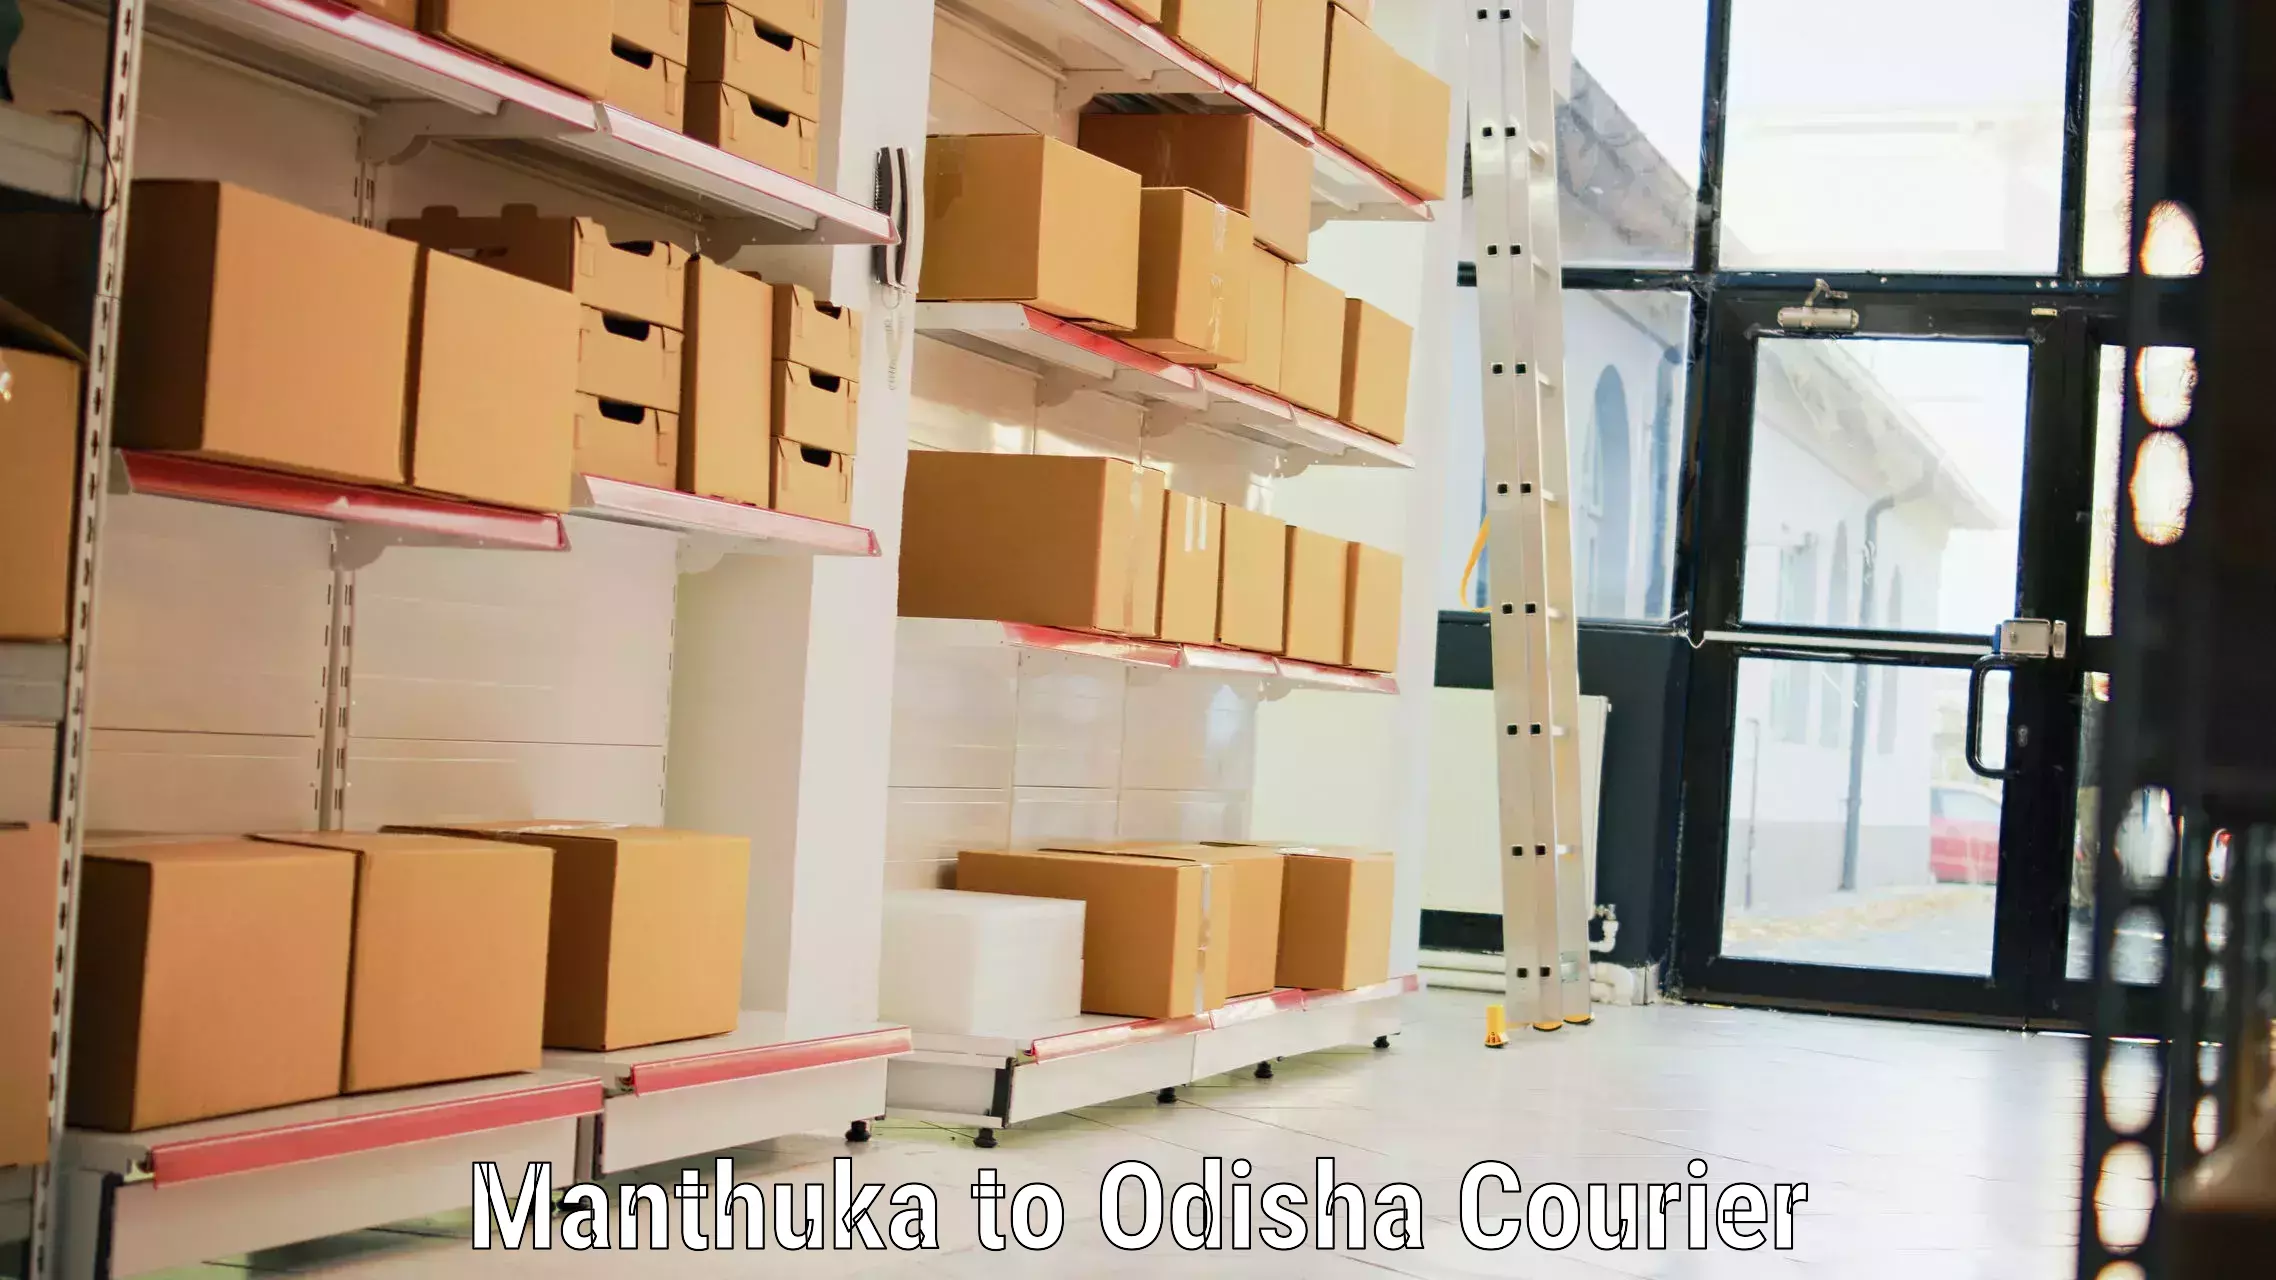 Luggage delivery app Manthuka to Odisha